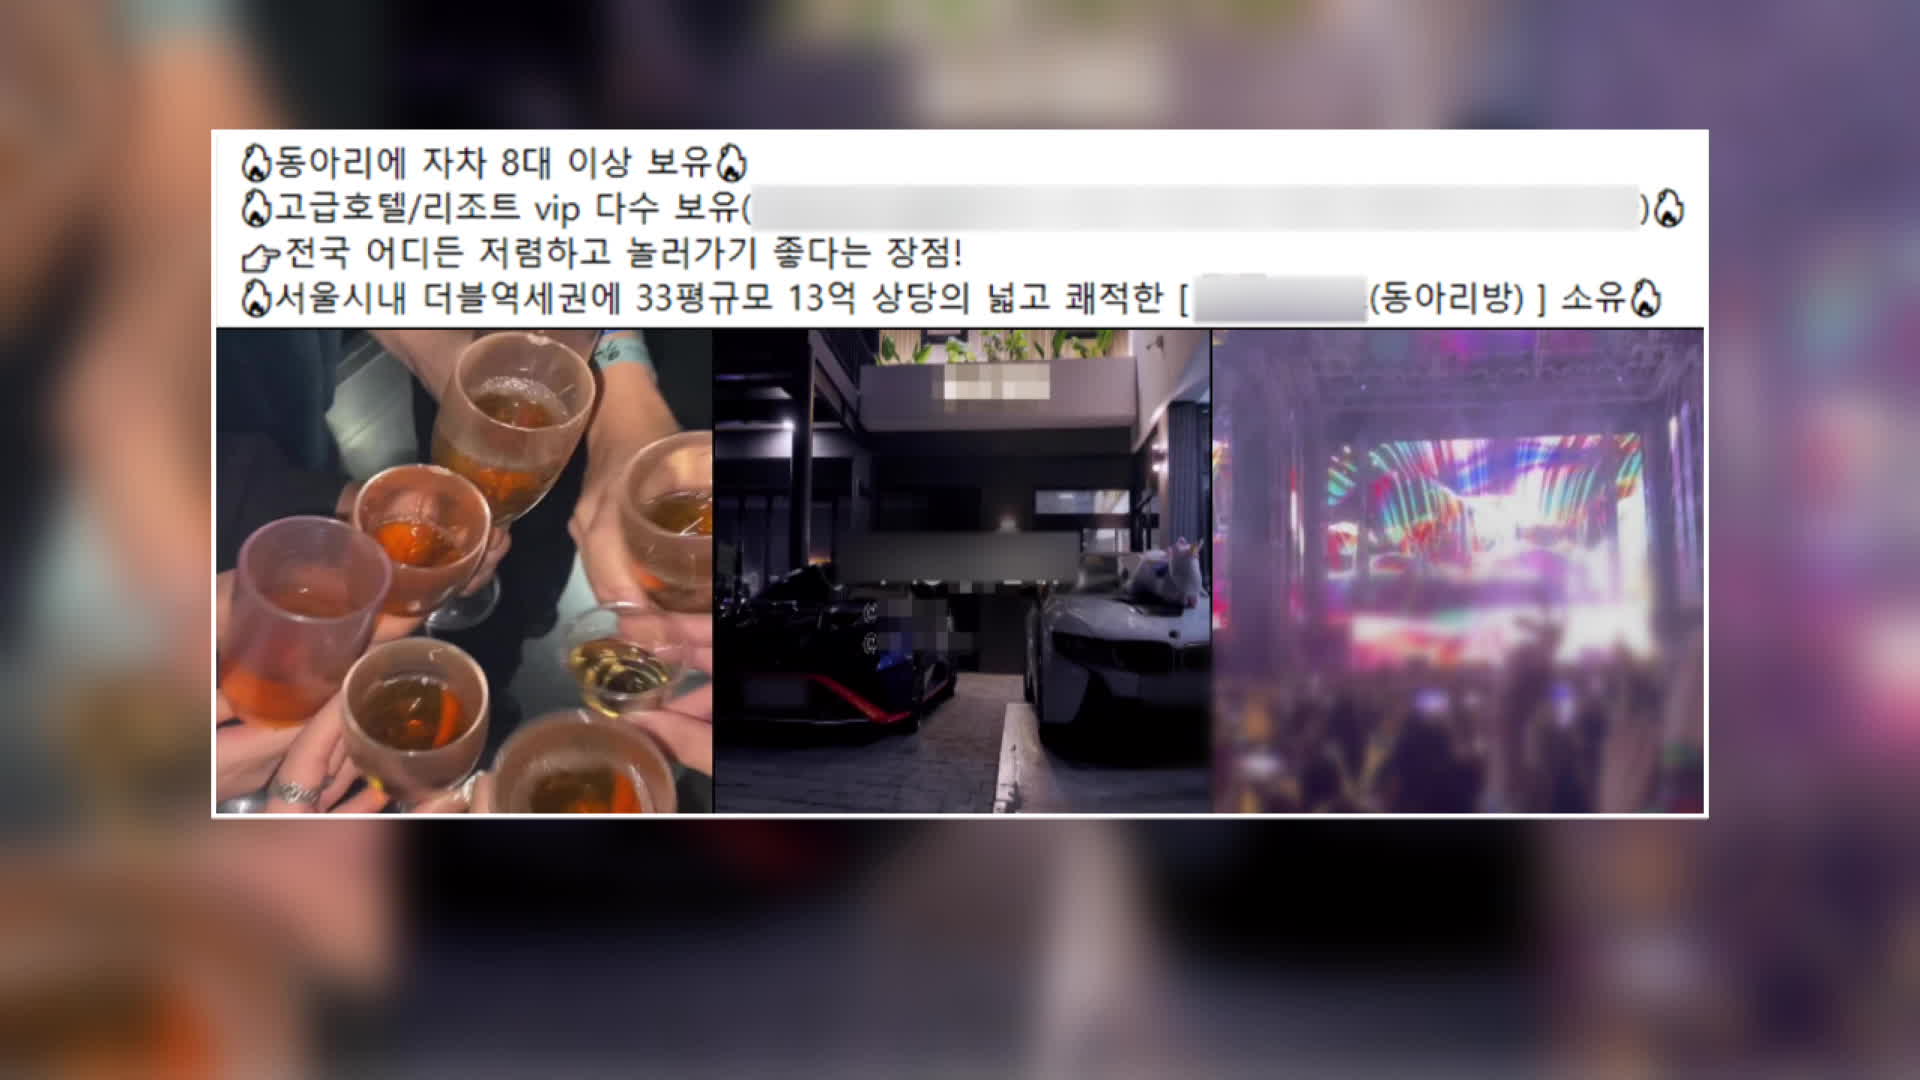 “가입하면 호텔·레스토랑 혜택”<br>…동아리가 ‘마약 클럽’?